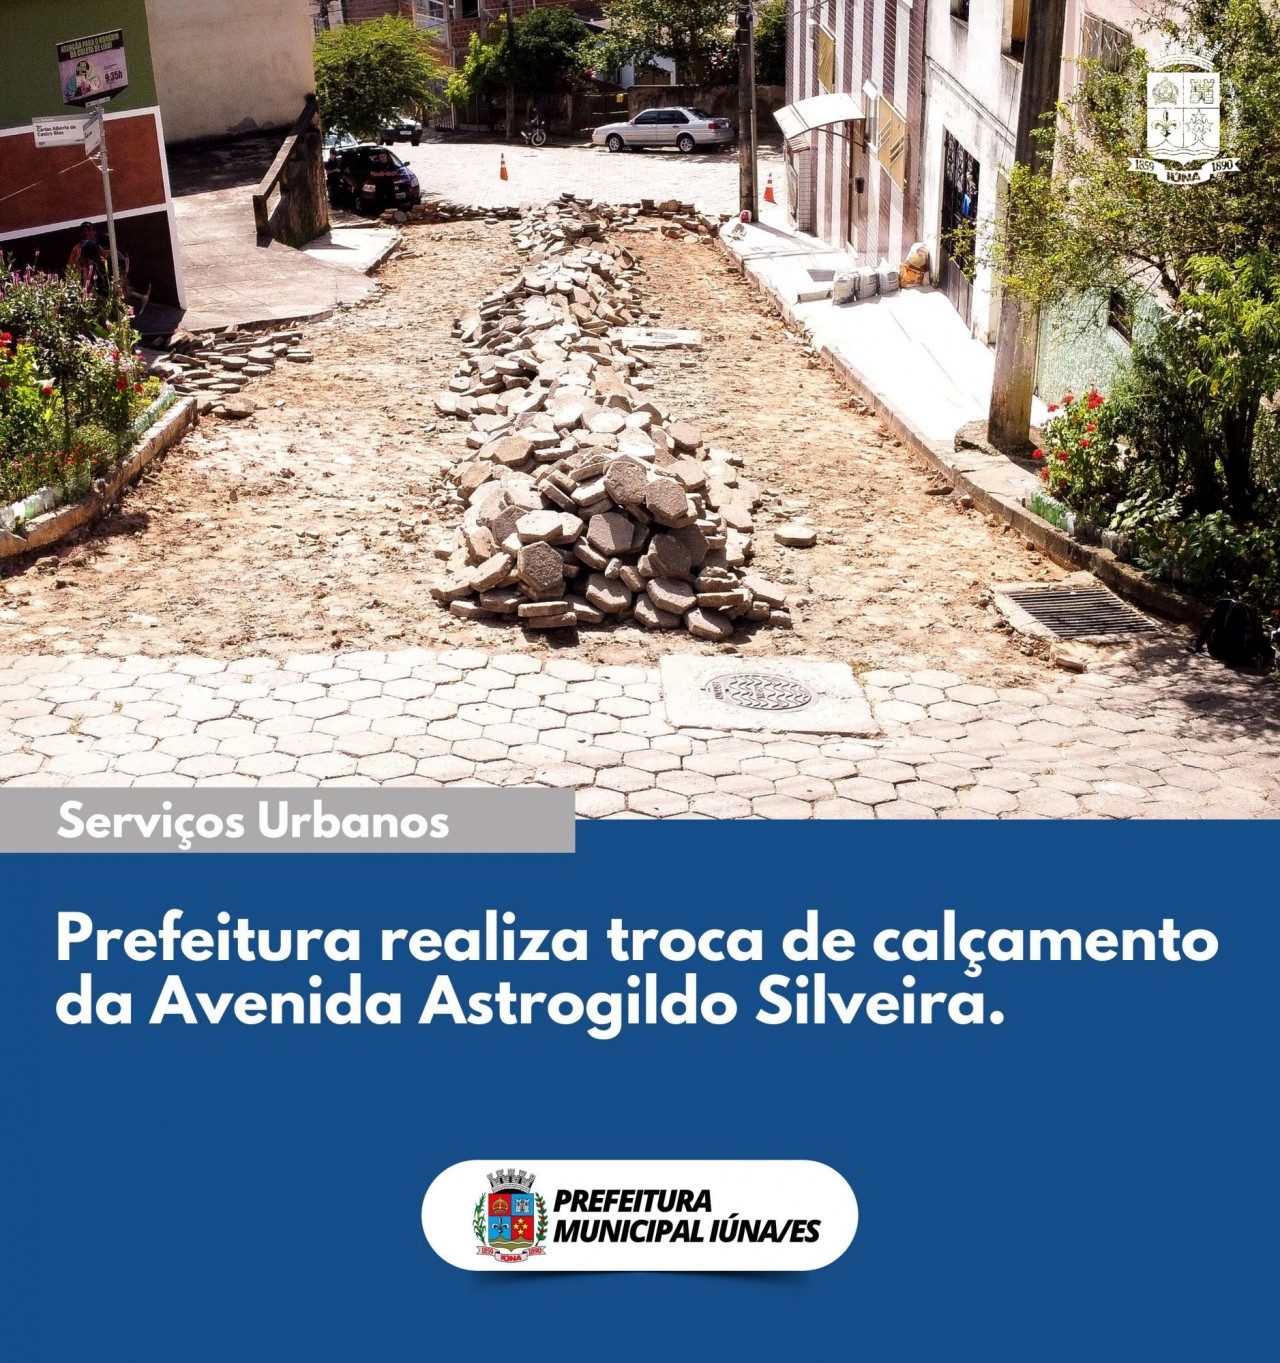 Prefeitura realiza troca de calçamento da Avenida Astrogildo Silveira.